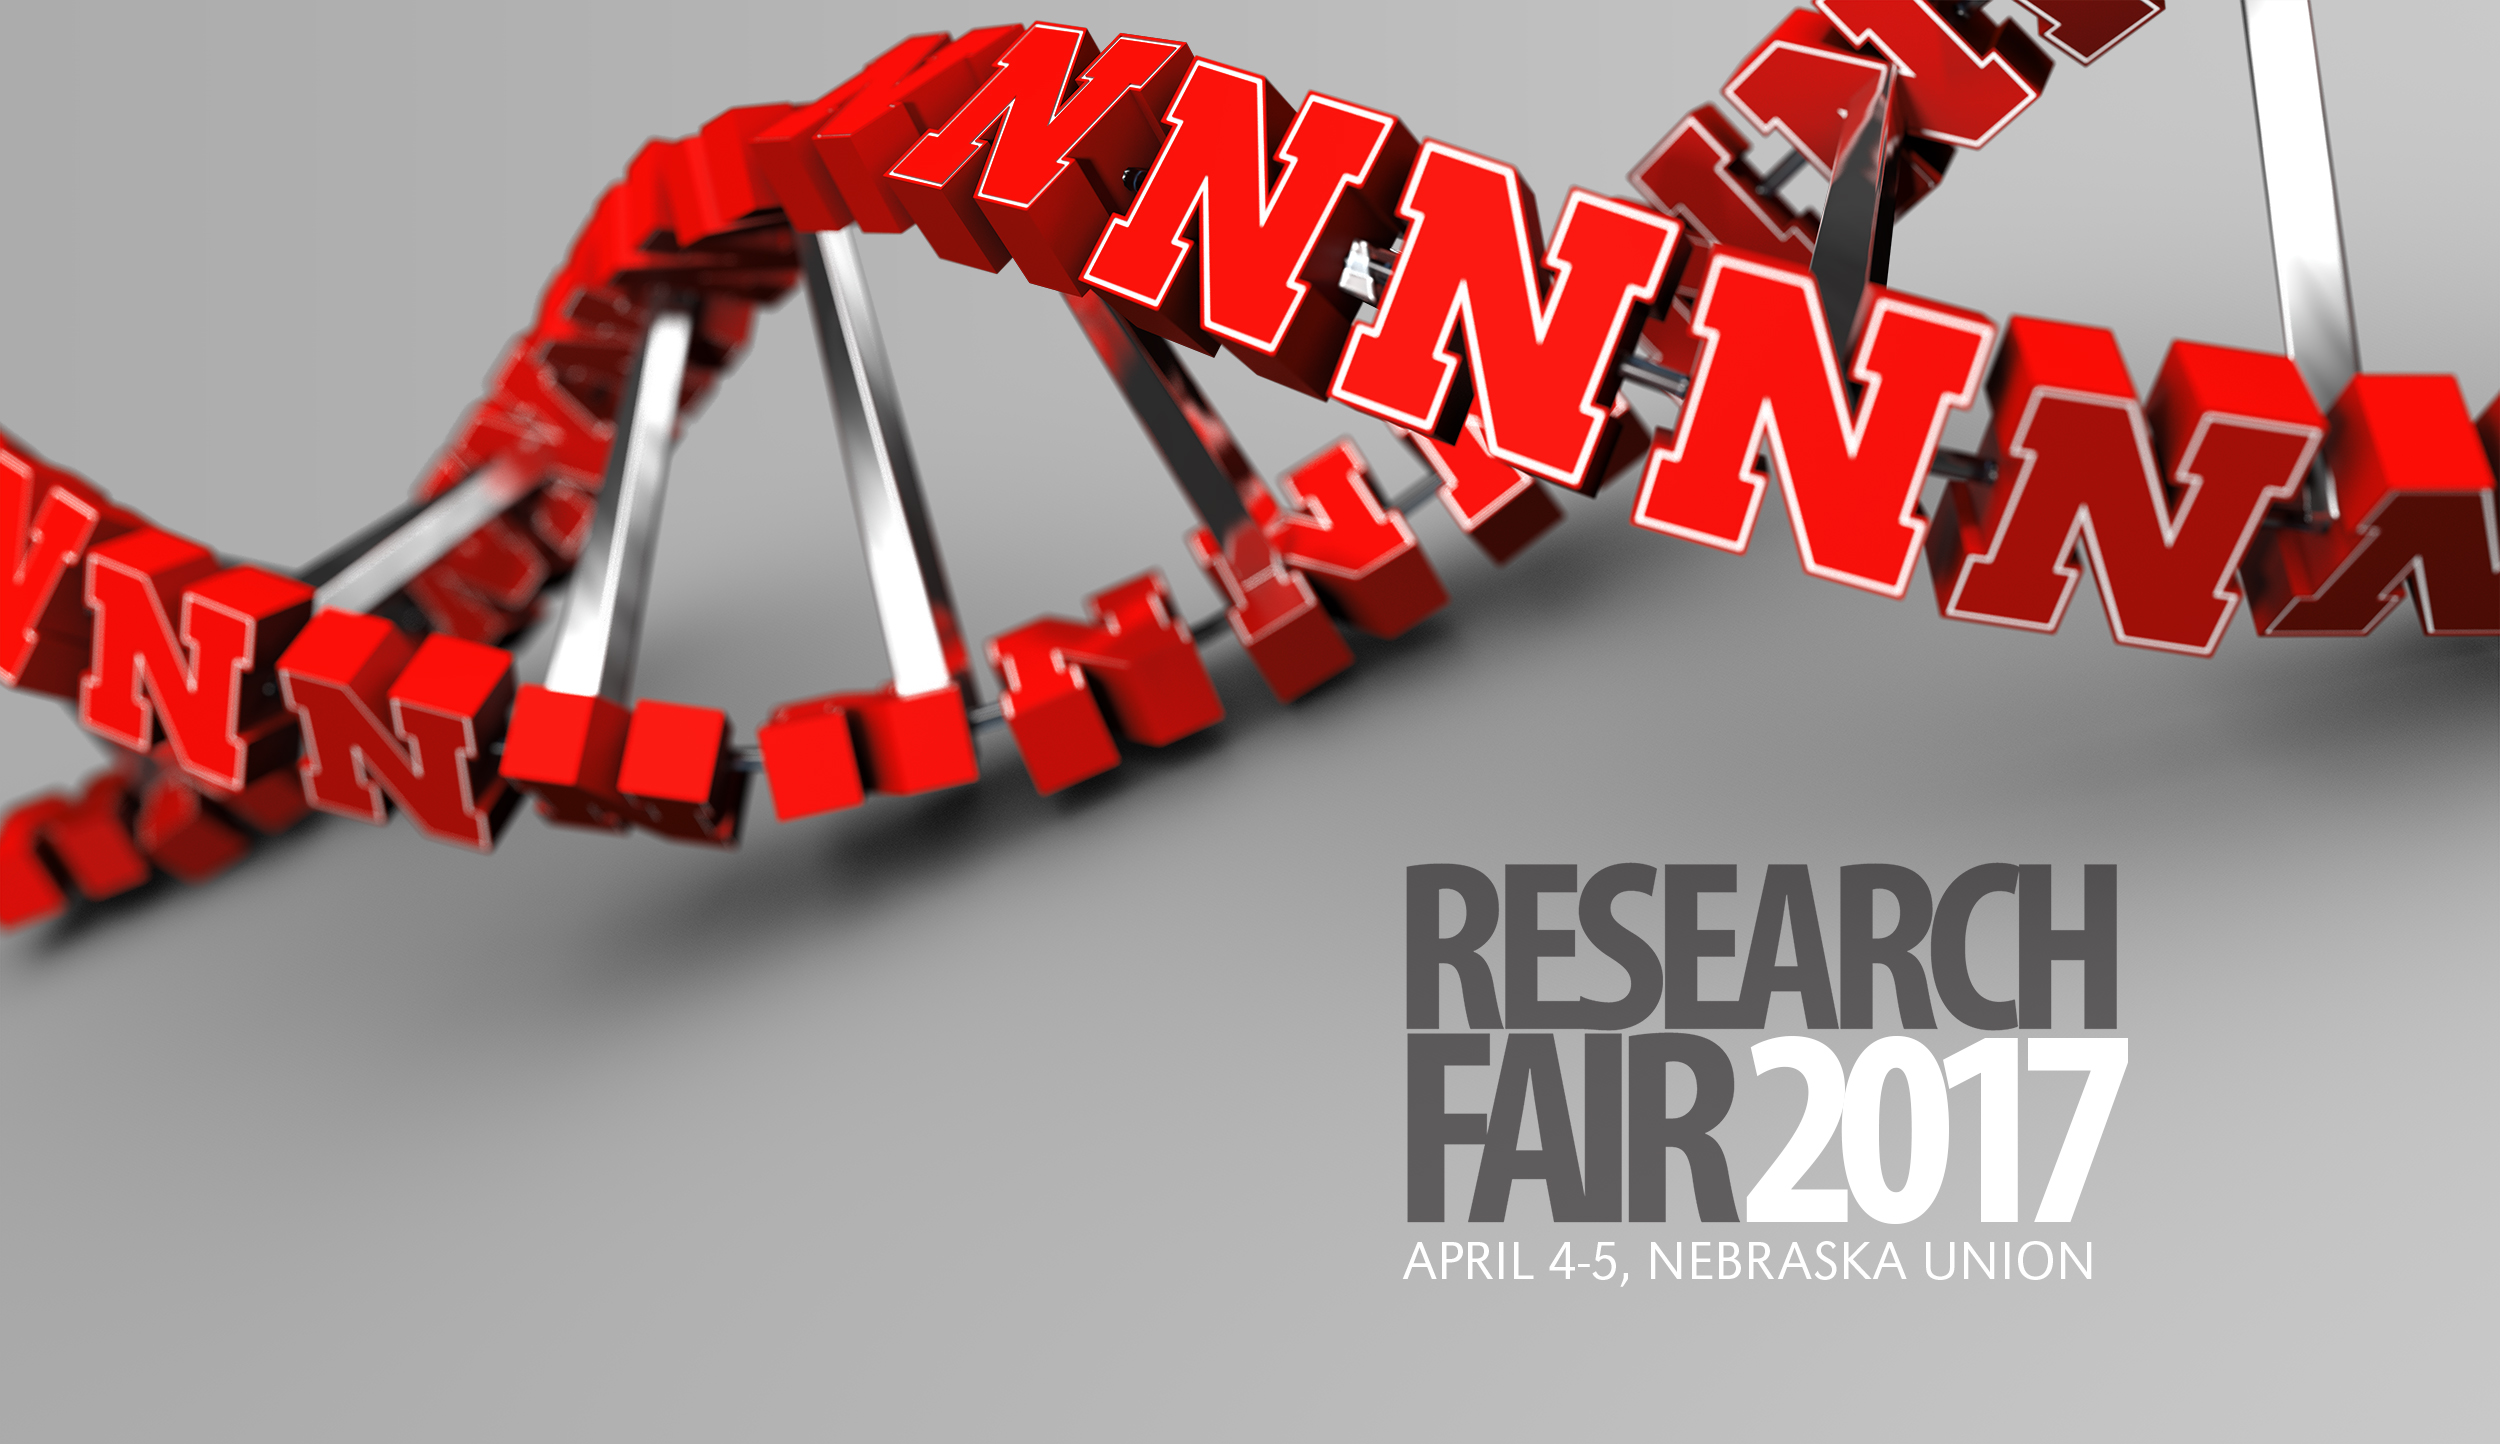 Research Fair 2017